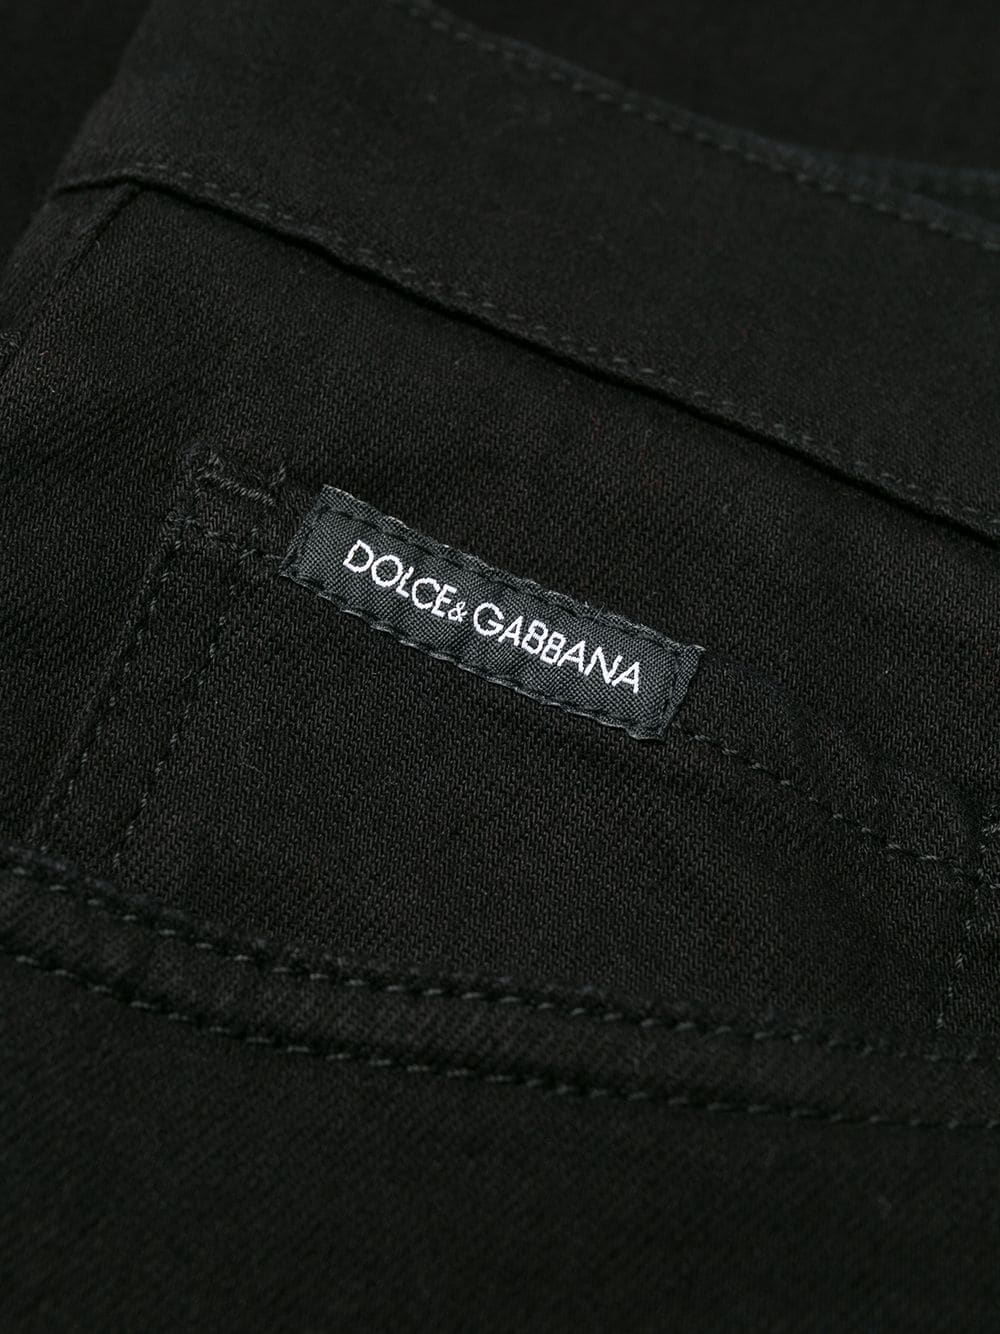 Dolce & Gabbana Stretch Skinny Jeans In Bandana Print - Farfetch